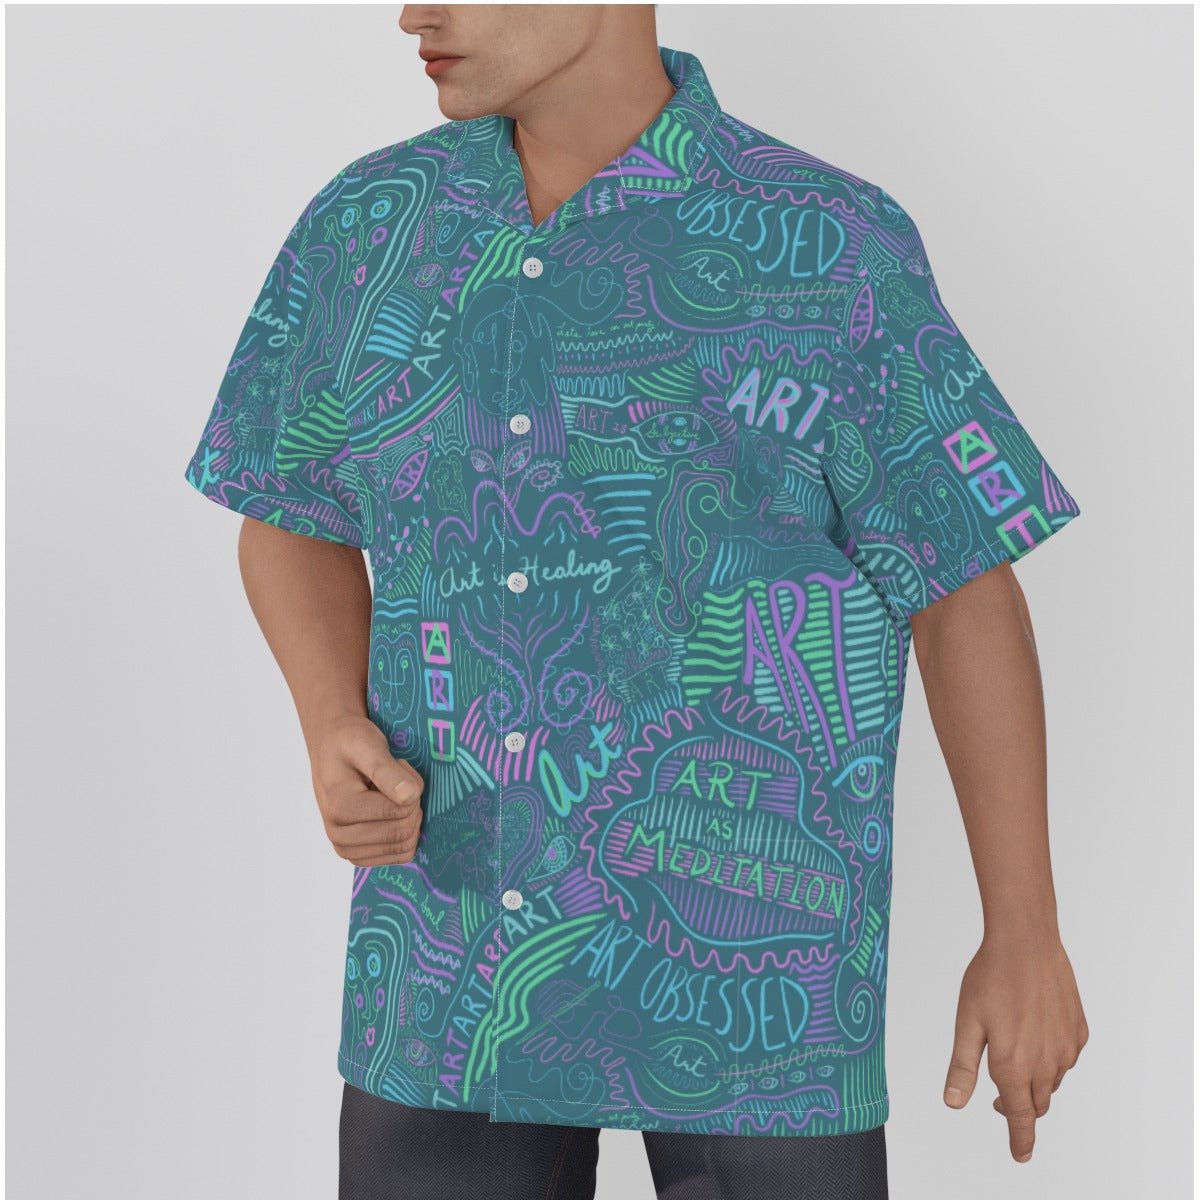 "Artsy Fartsy" - Men's Hawaiian Shirt | Shirts & Tops | All Around Artsy Fashion